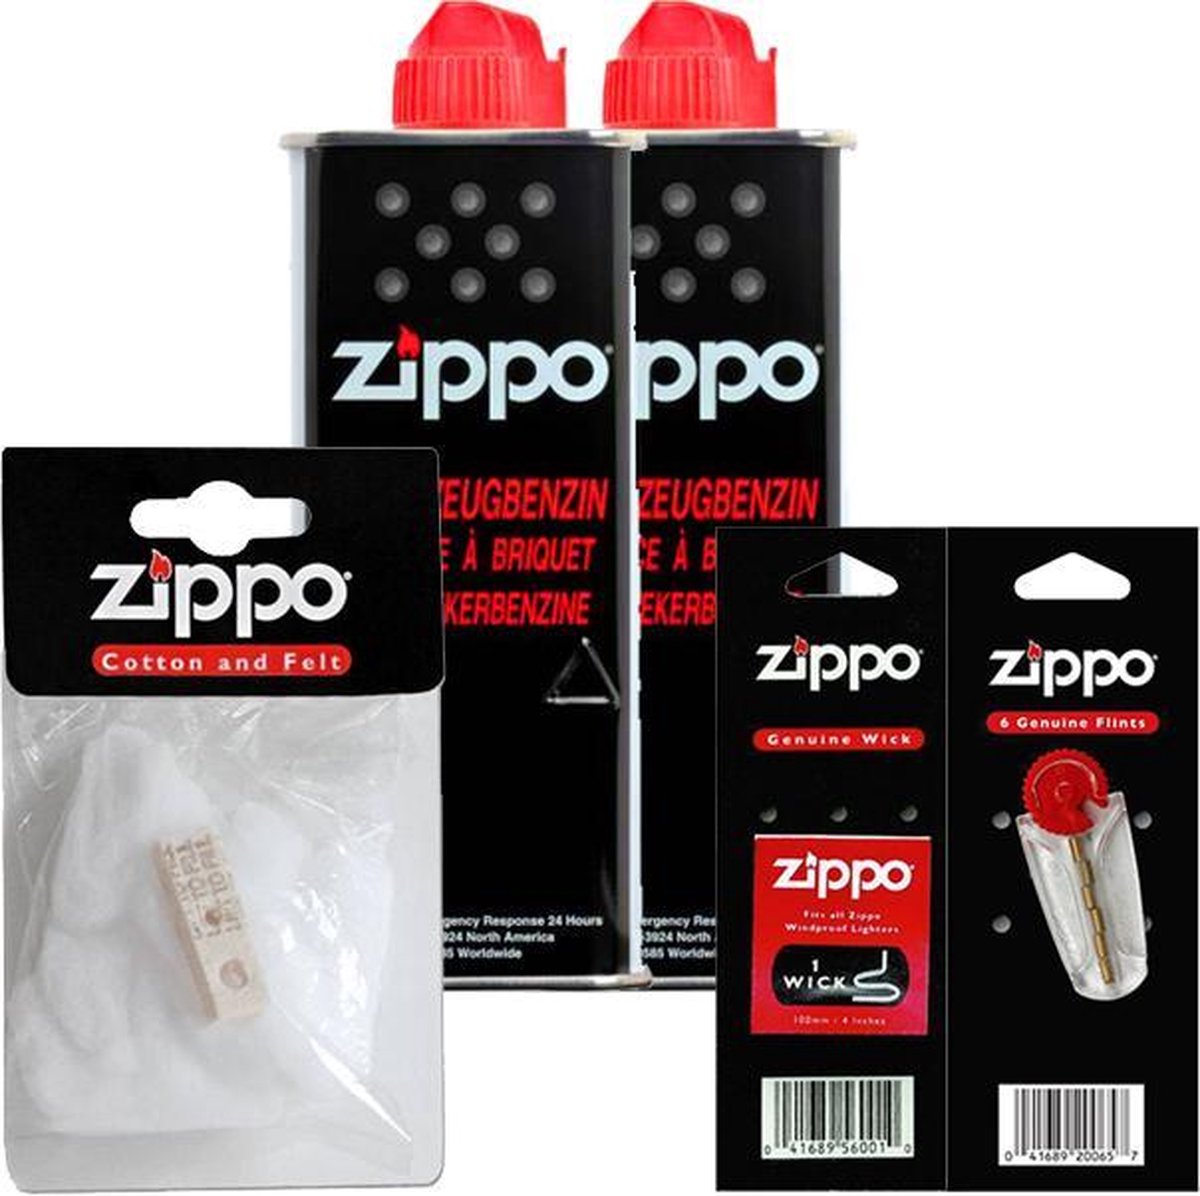 Zippo Aansteker Onderhoudspakket: 2 x Benzine / Vloeistof, 1 x Katoen & Filt, 1 x Vuurstenen en 1 x Lont - Zippo